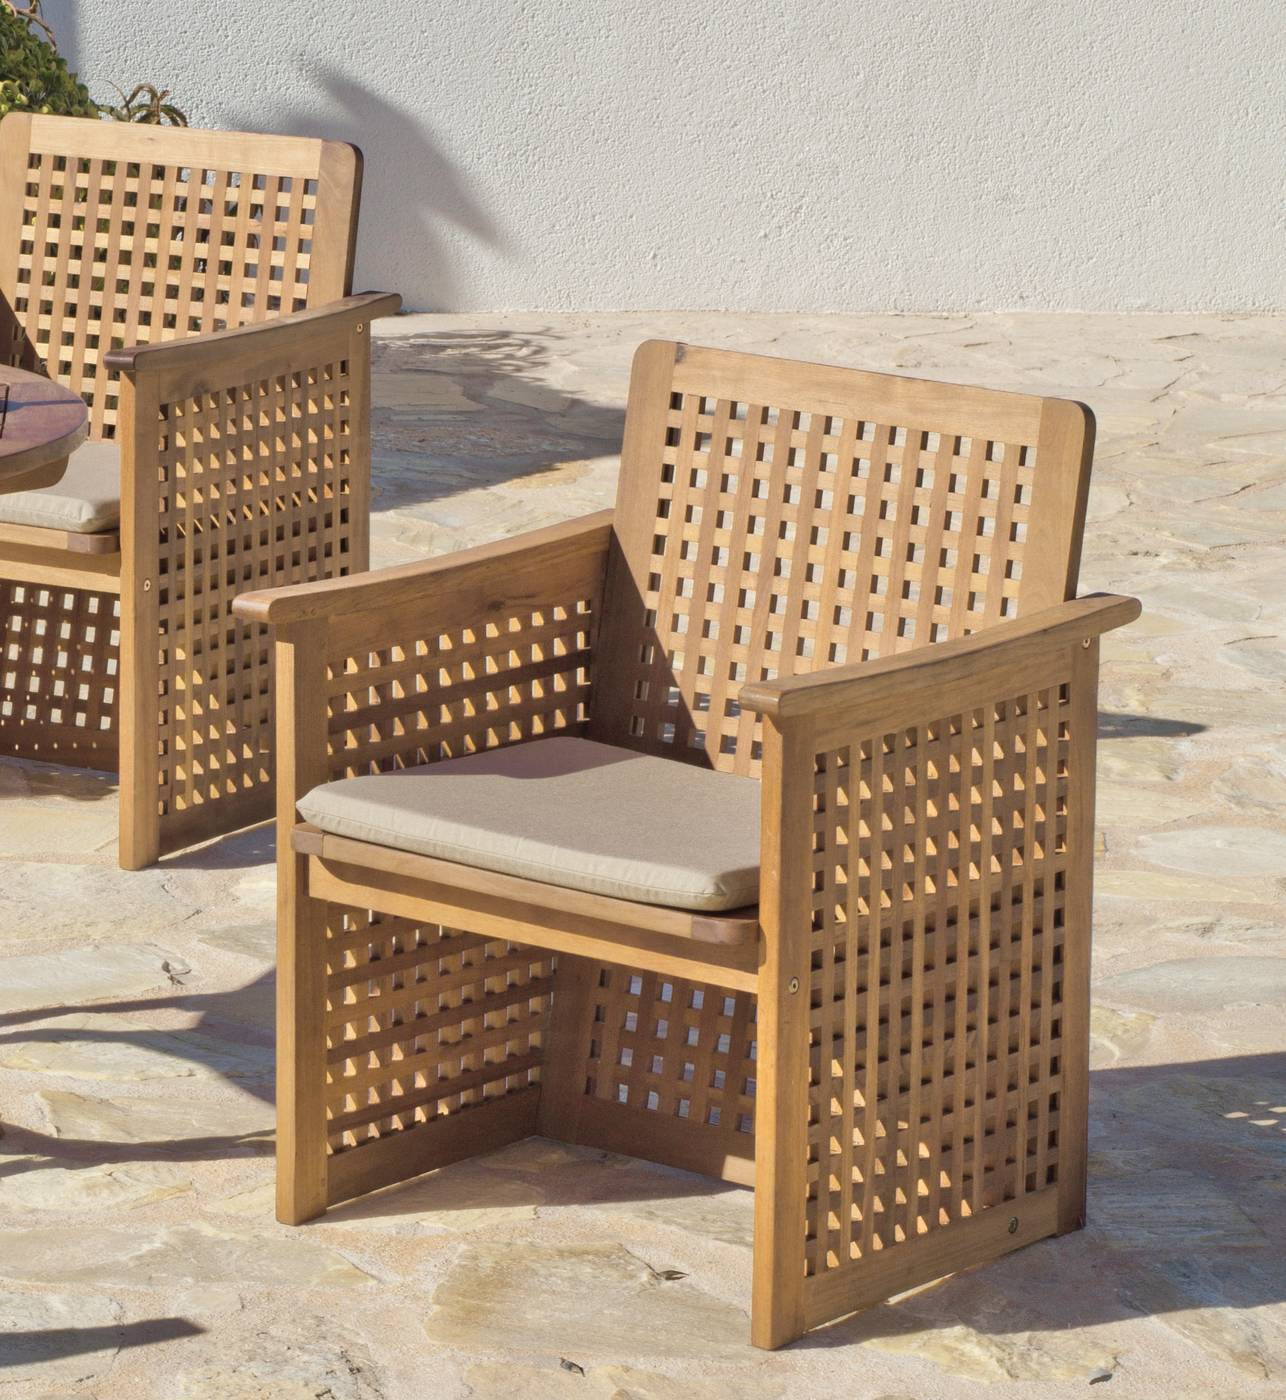 Robusto sillón de madera de teka para jardín o terraza.